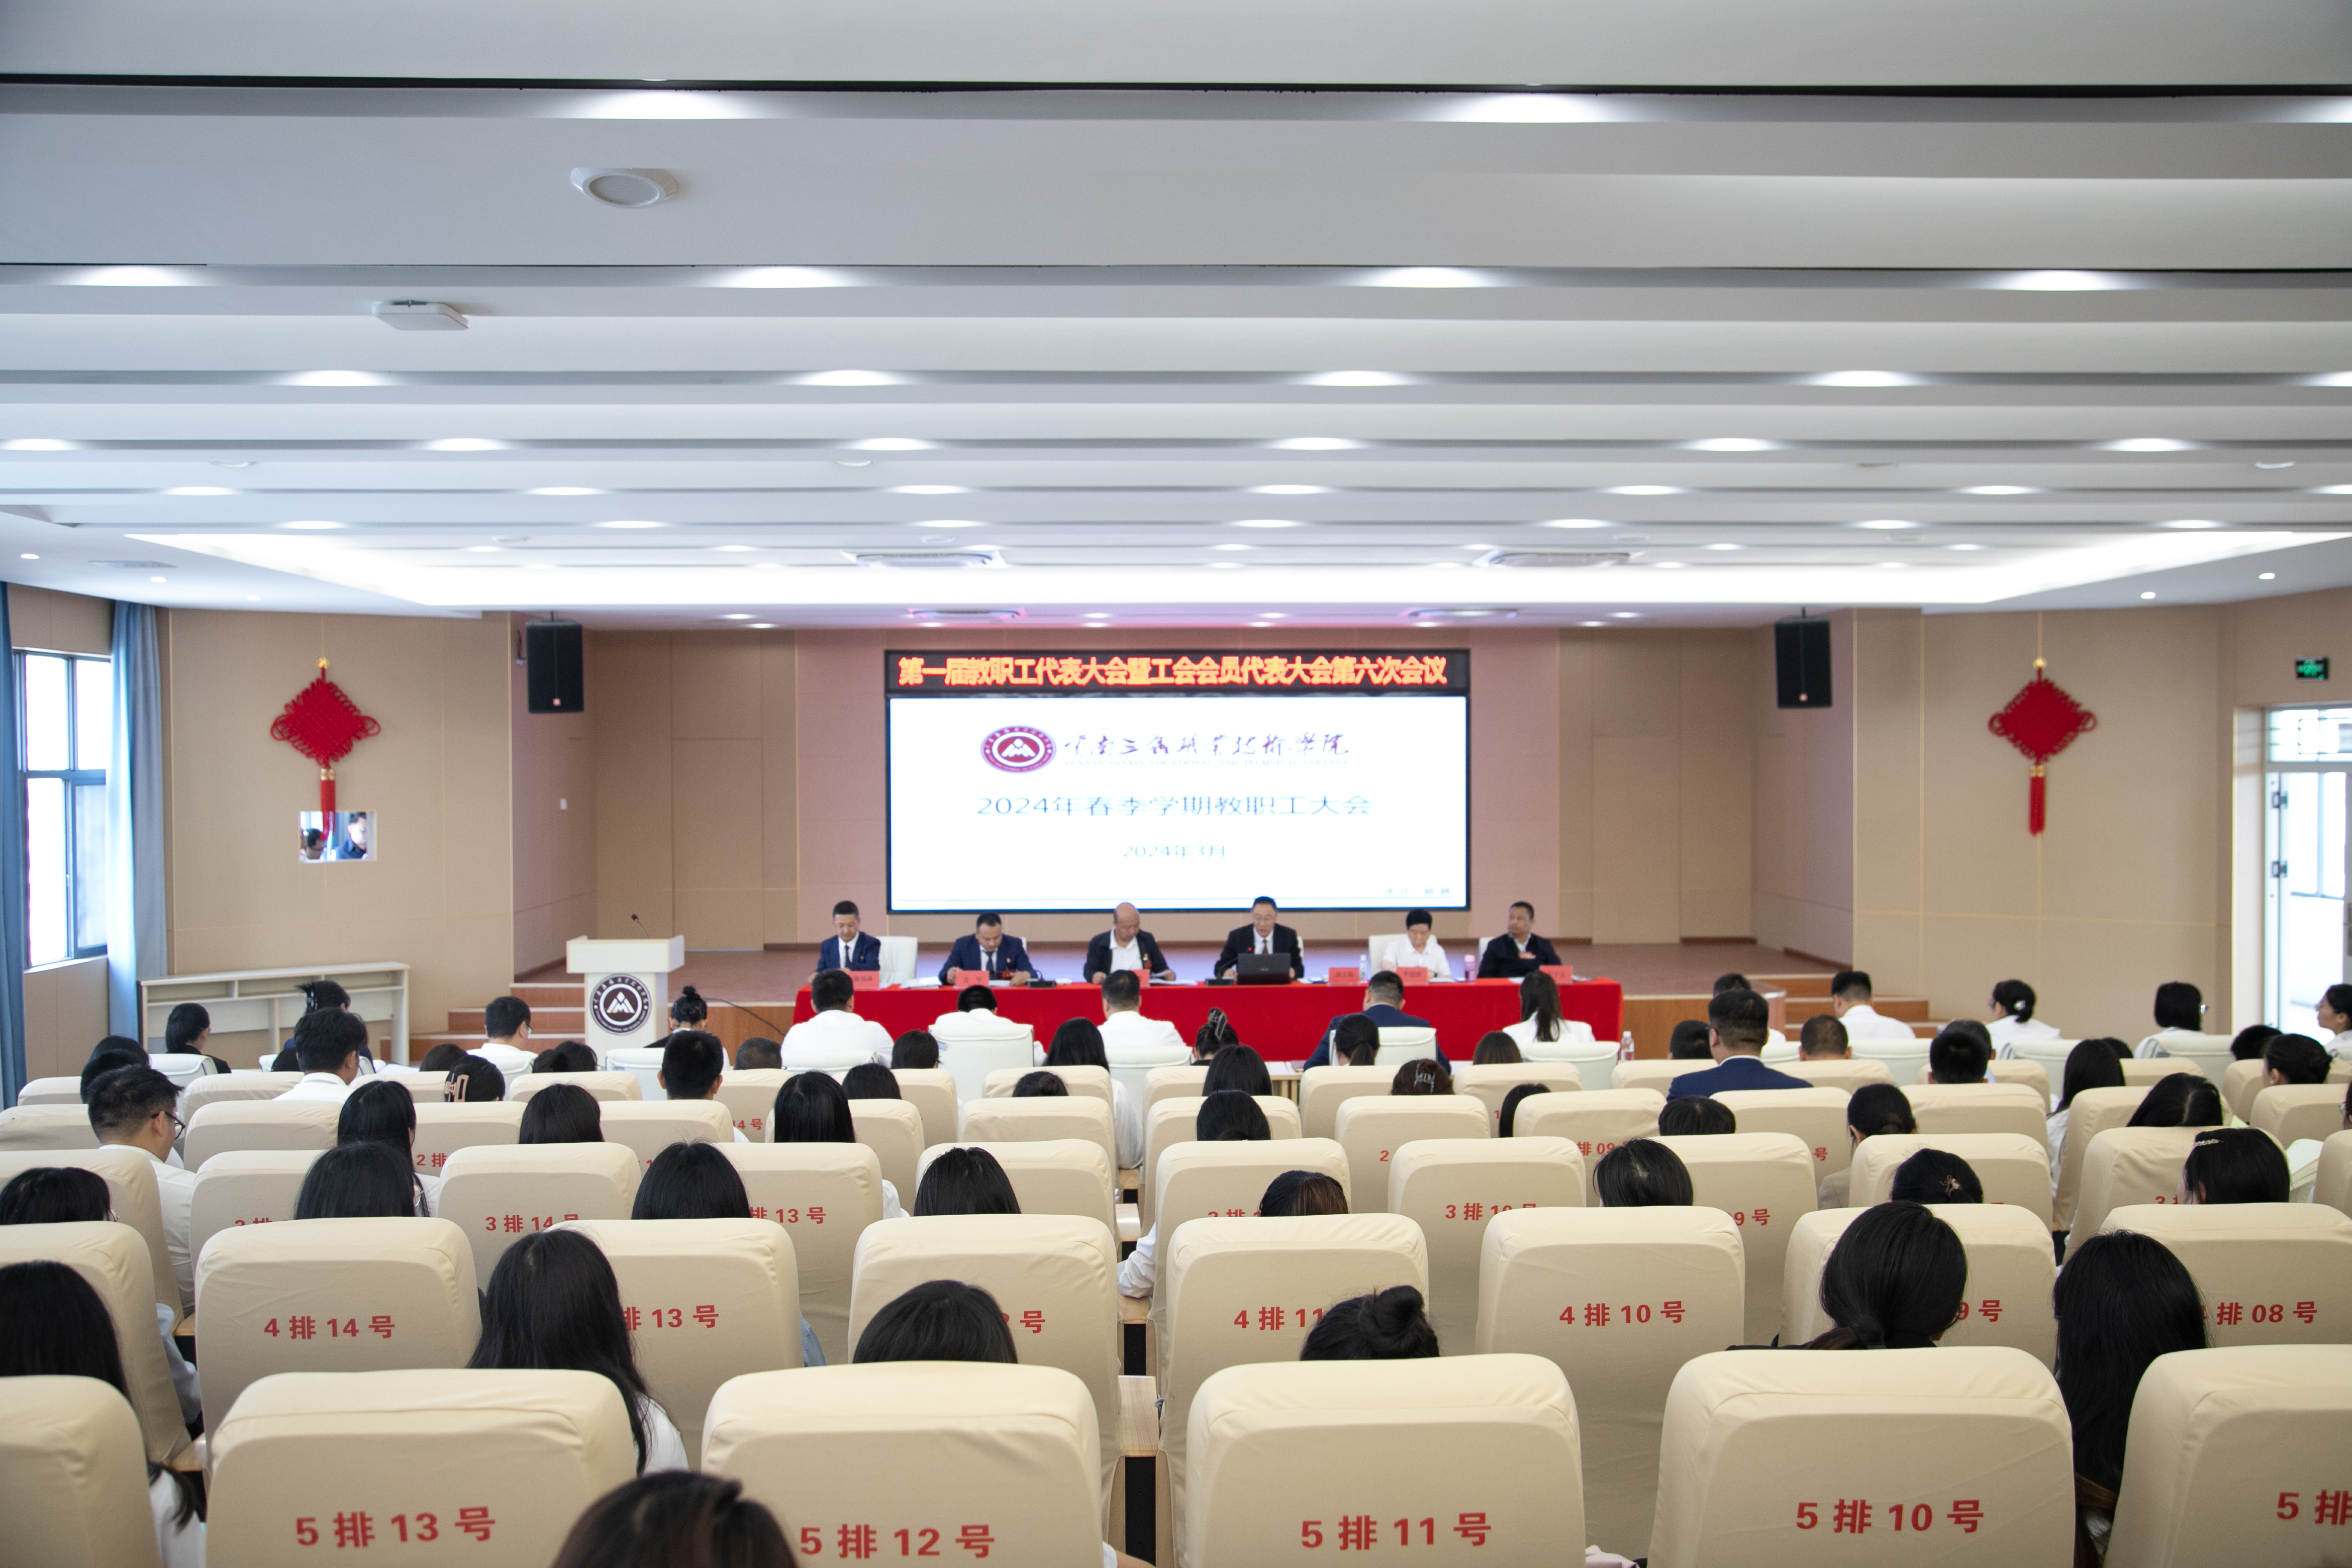 云南三鑫职业技术学院 第一届教职工代表大会暨工会会员代表大会第六次会议顺利召开